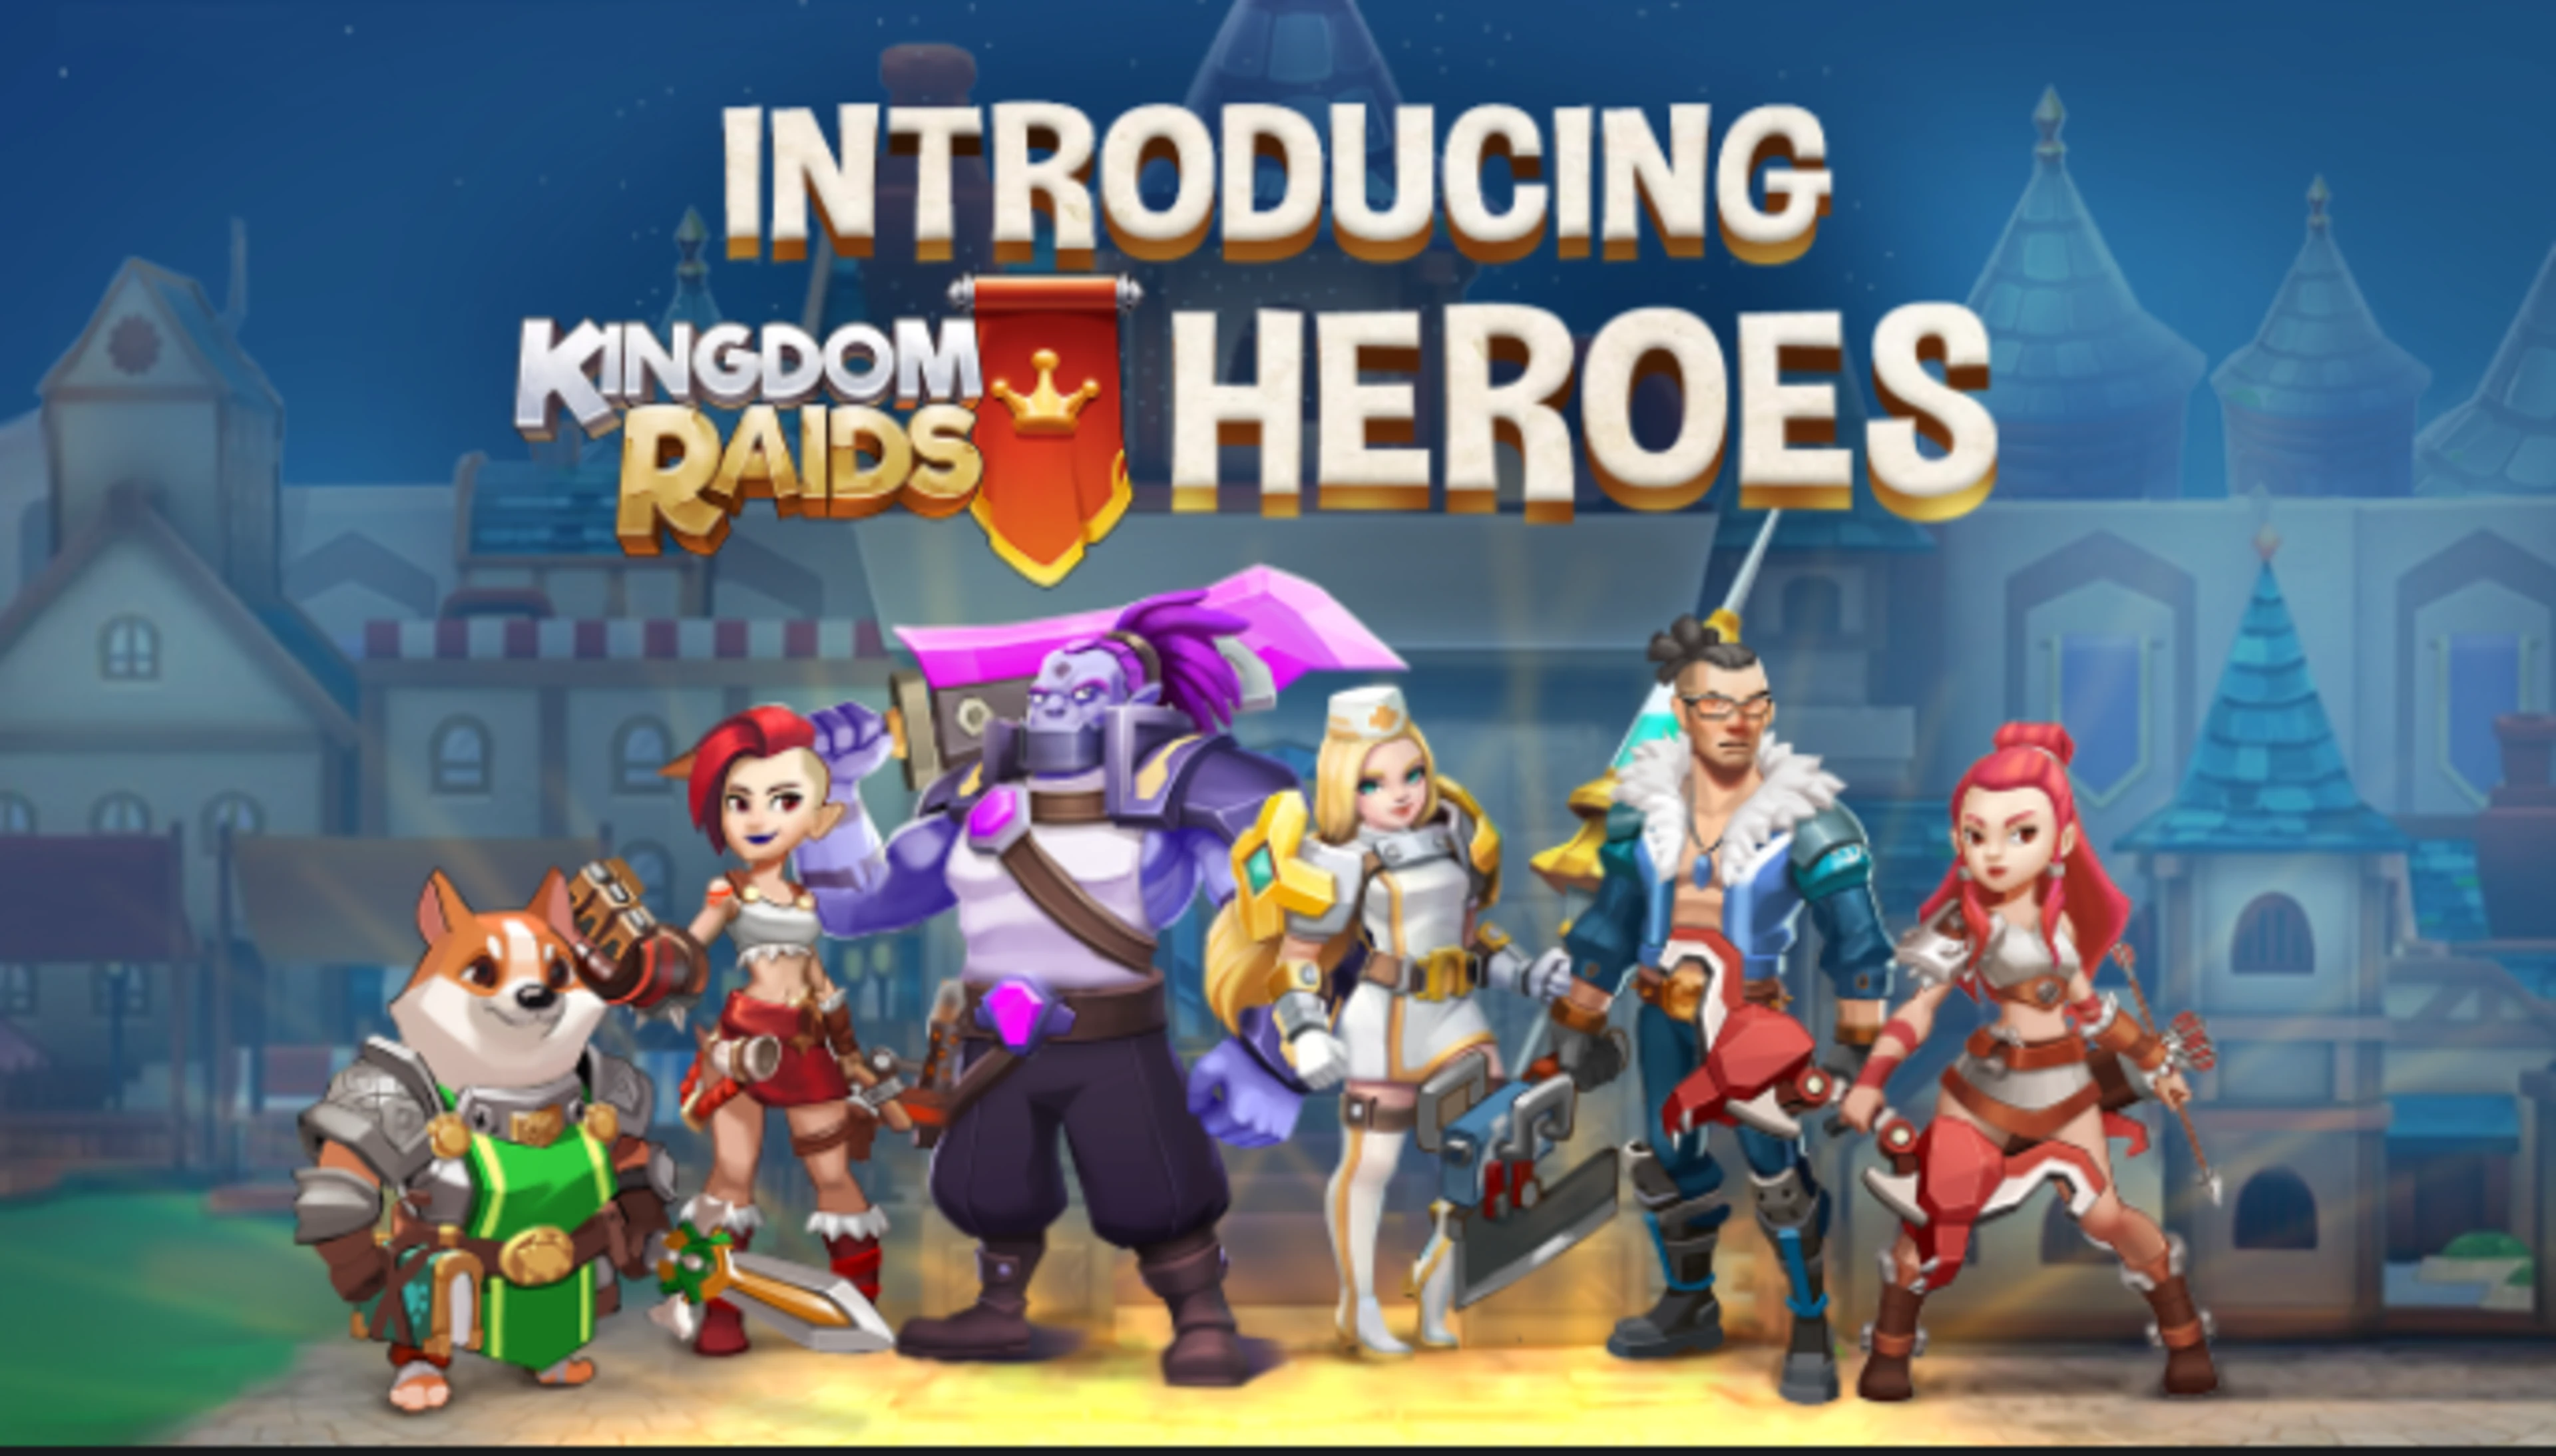 Kingdom Raids 3